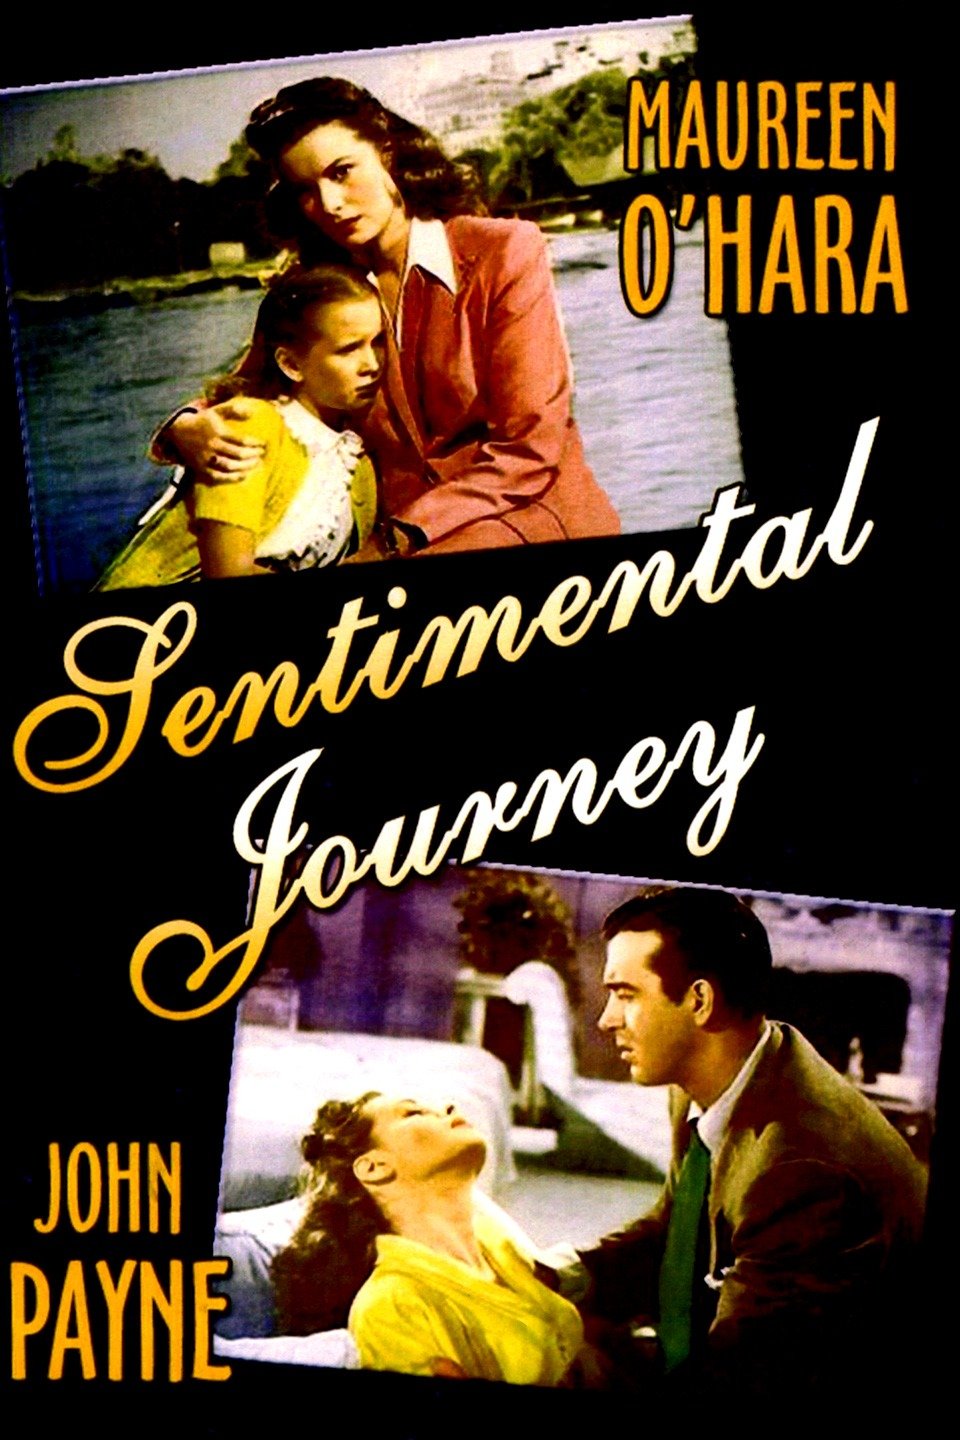 sentimental journey release date